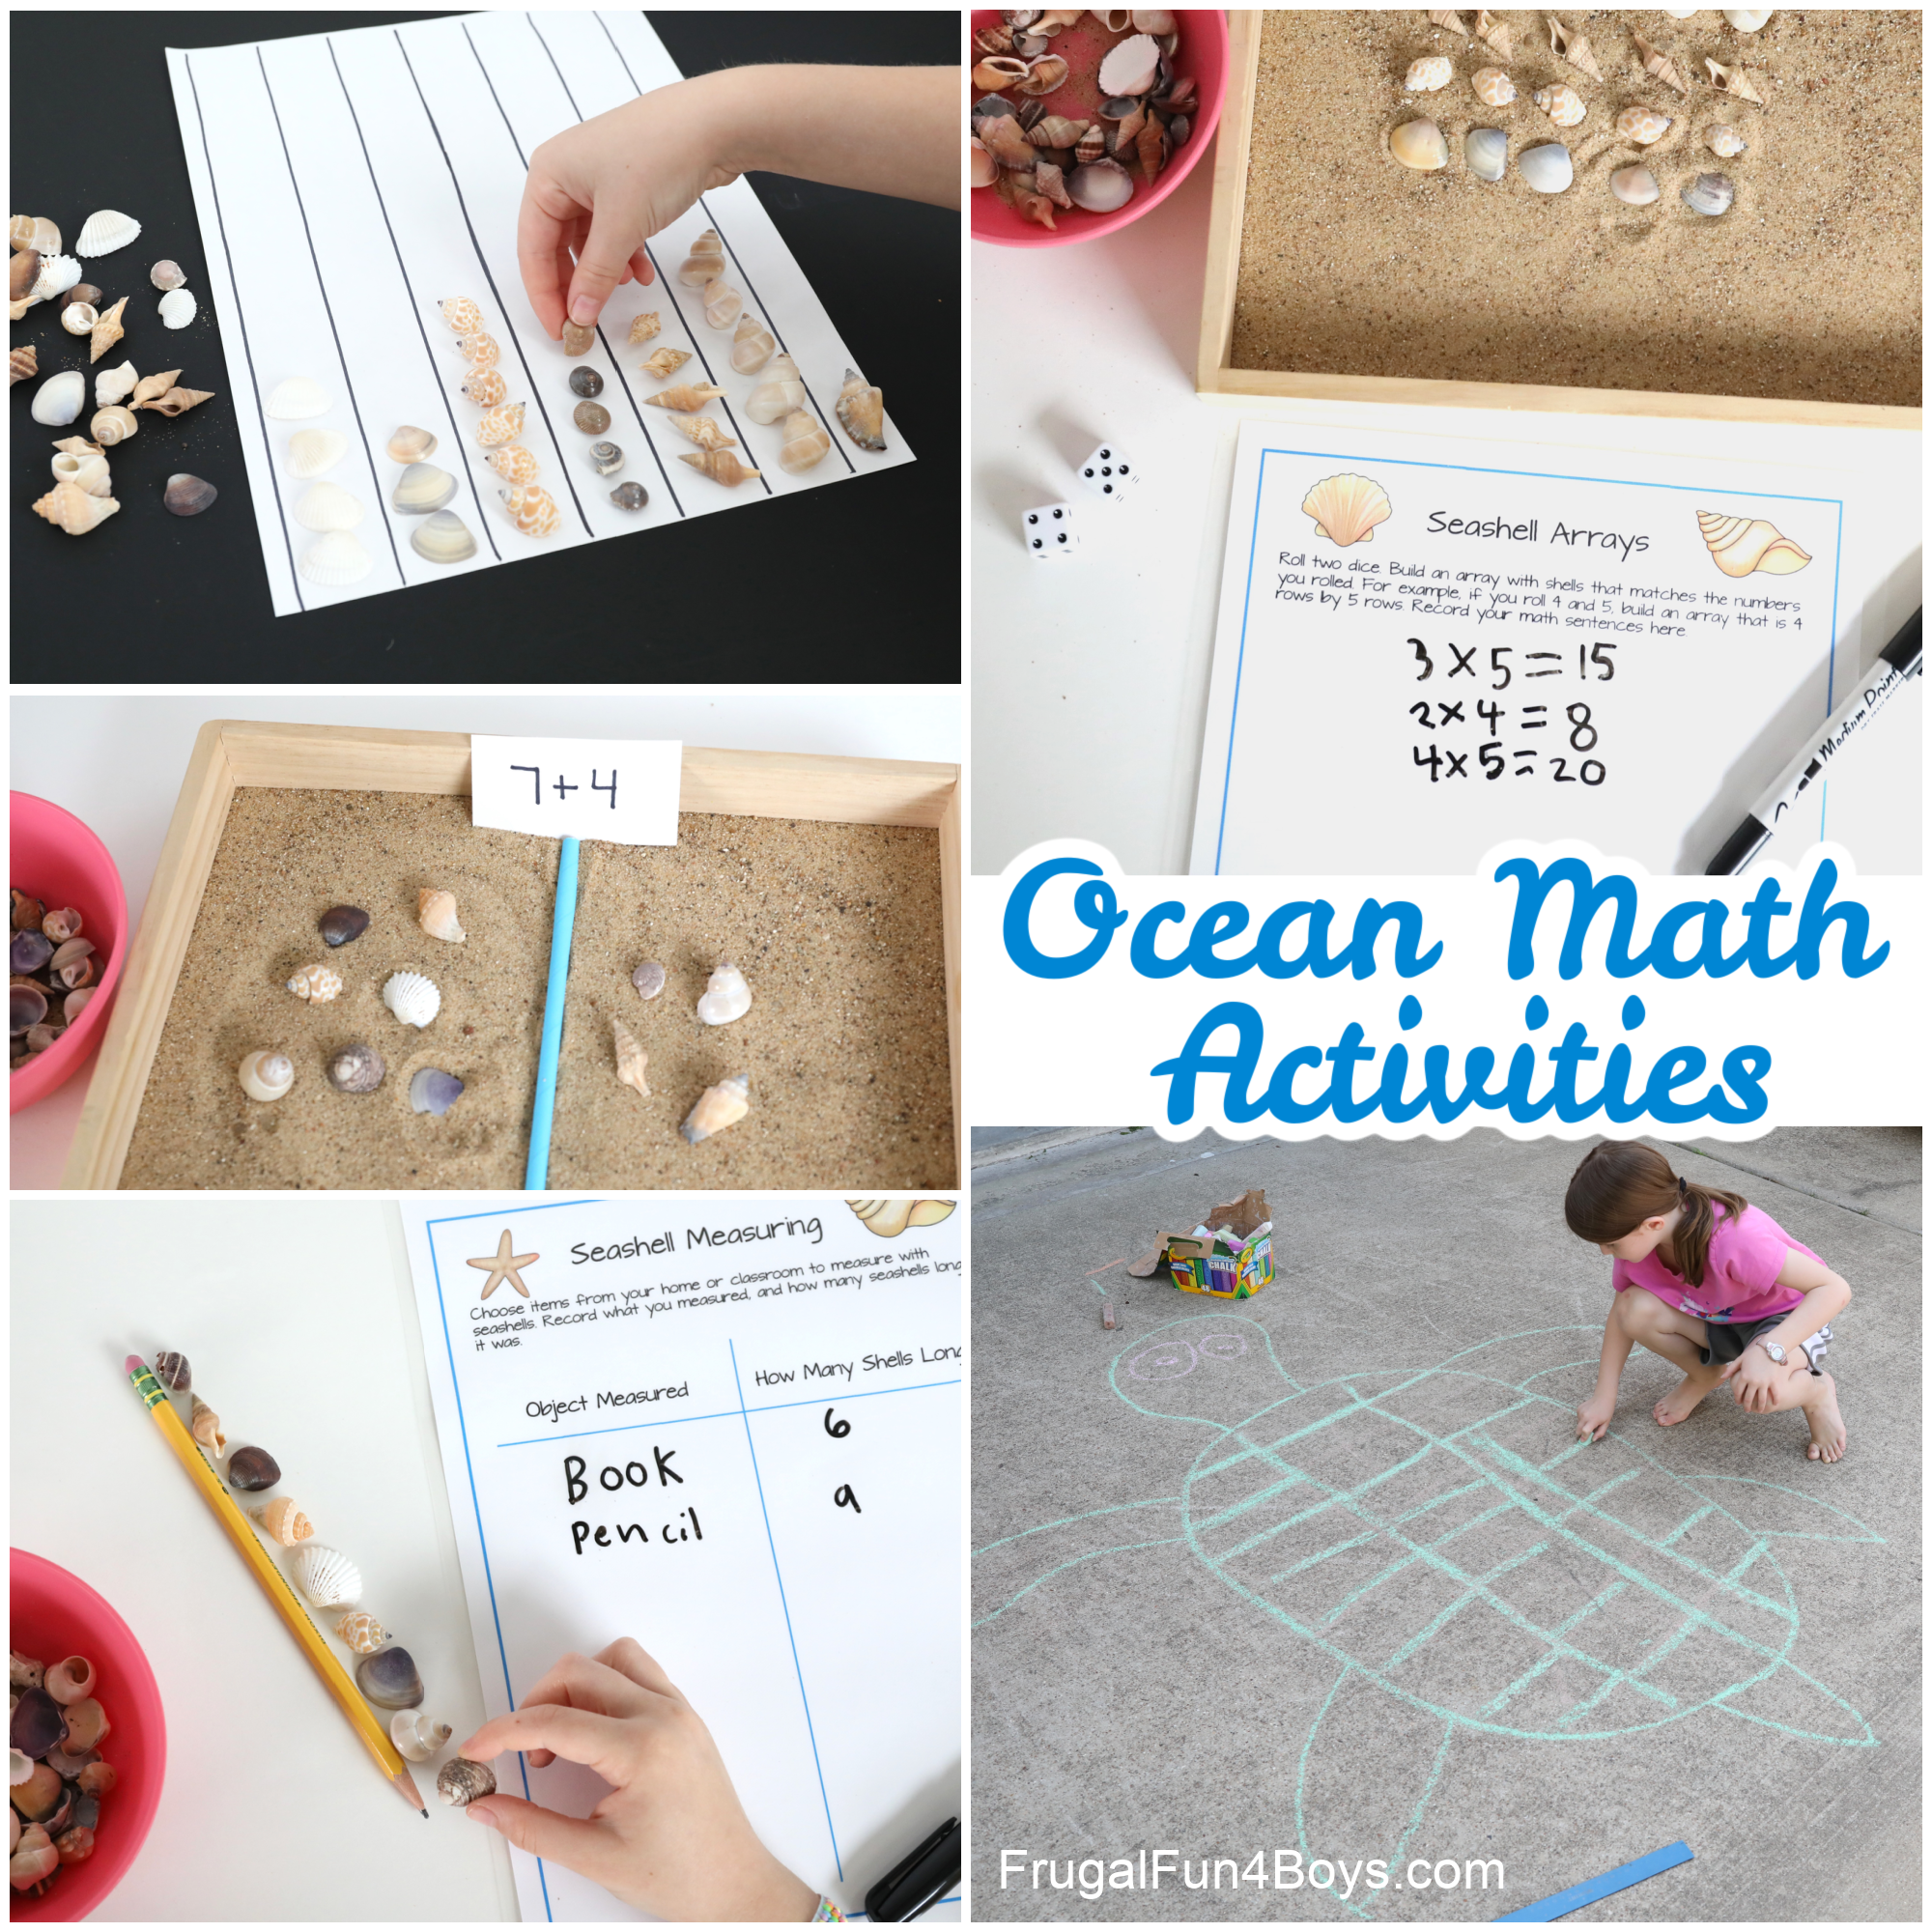 Ocean Math Activities